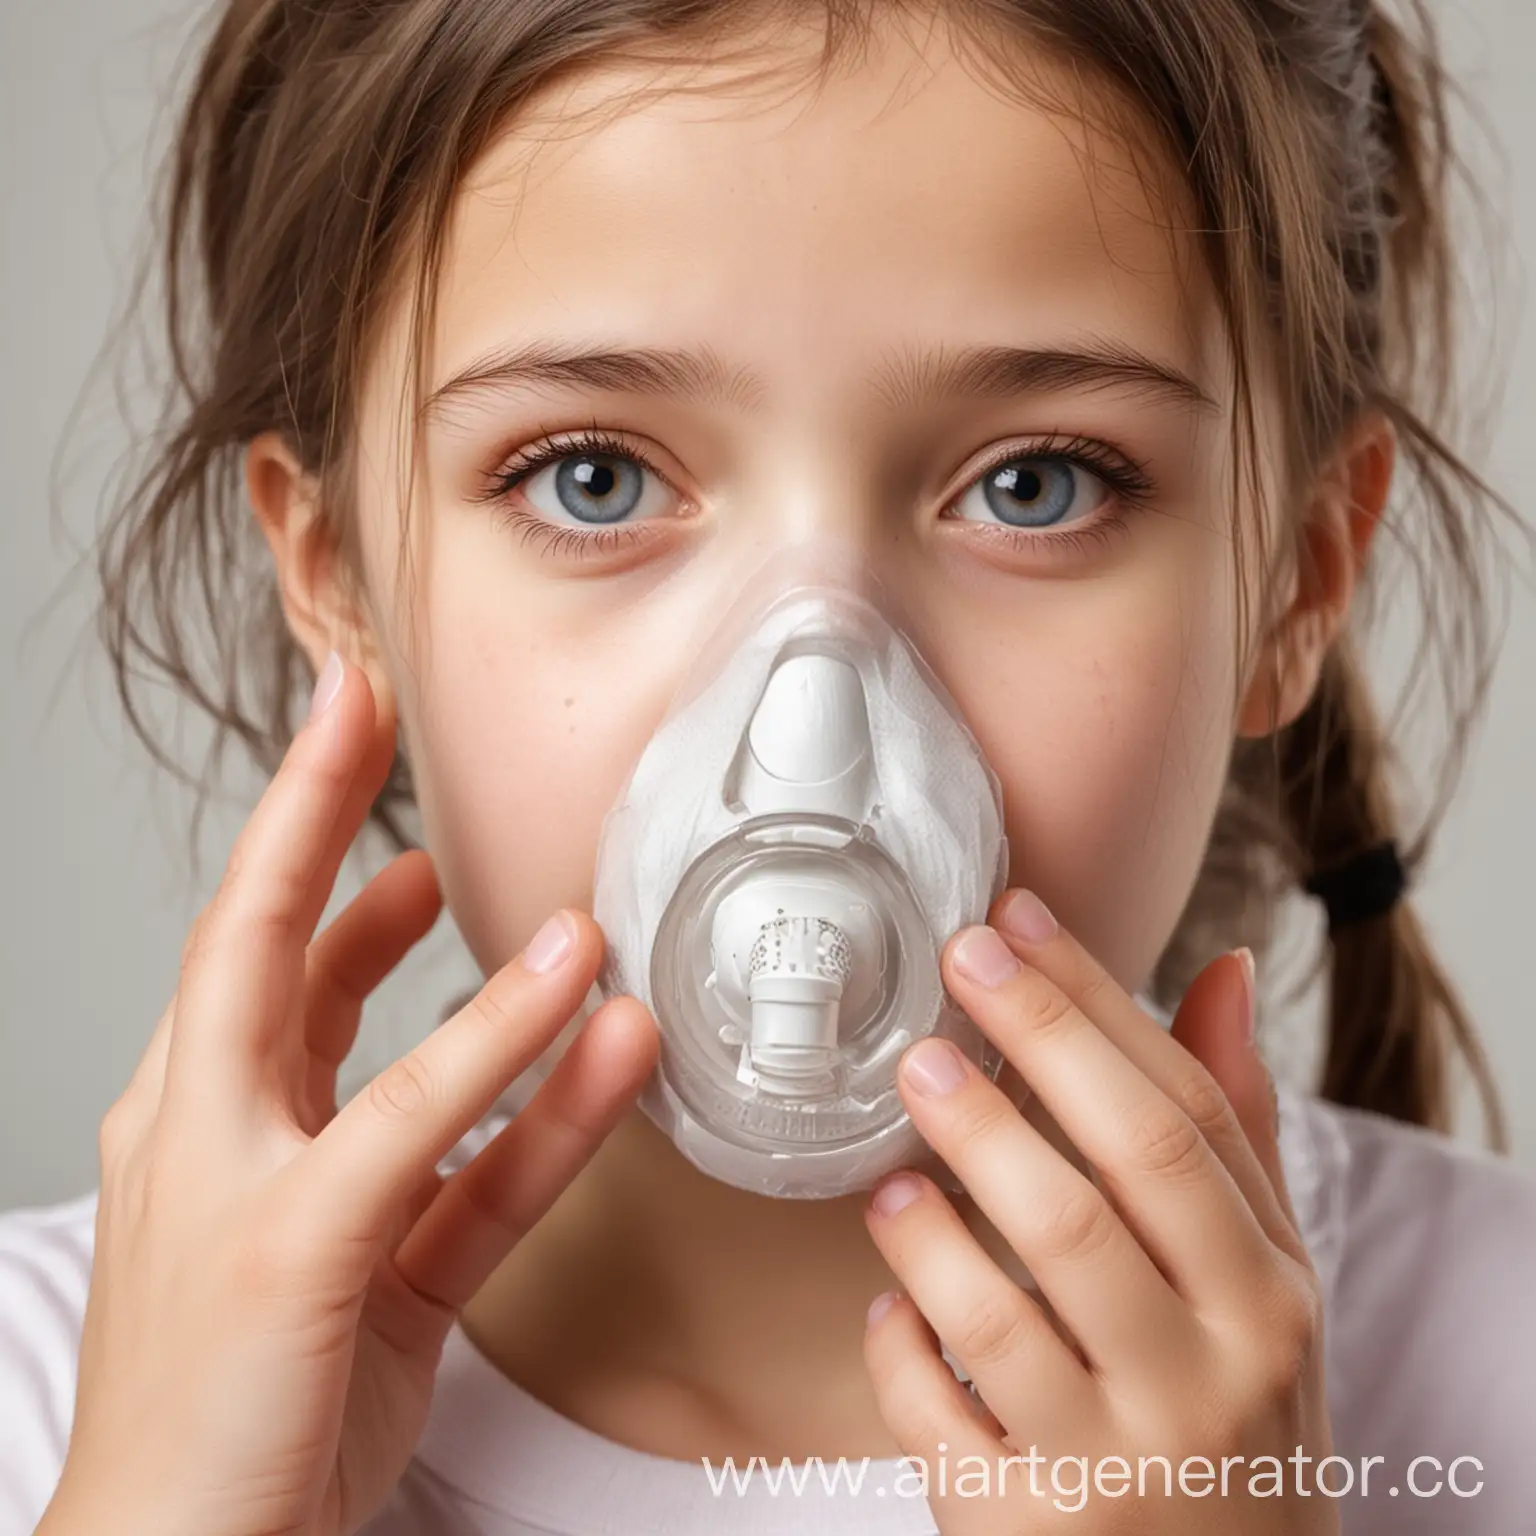 Всемирный день борьбы против астмы и аллергии